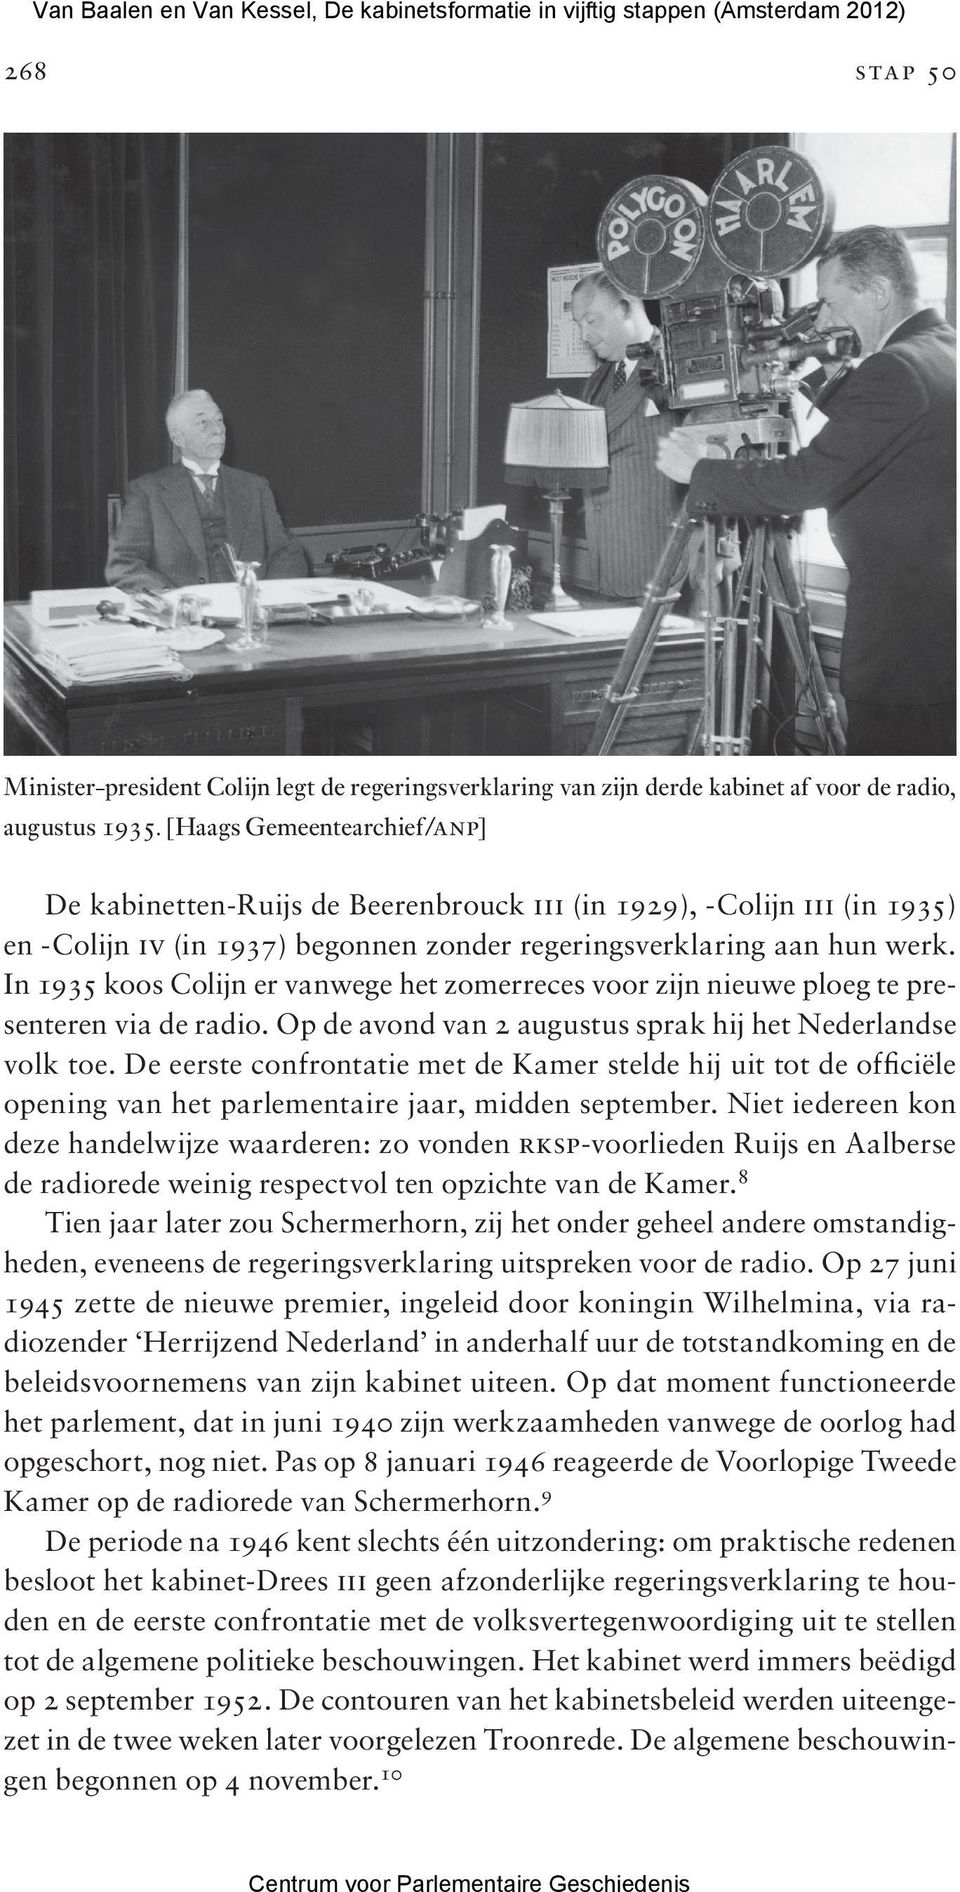 In 1935 koos Colijn er vanwege het zomerreces voor zijn nieuwe ploeg te presenteren via de radio. Op de avond van 2 augustus sprak hij het Nederlandse volk toe.